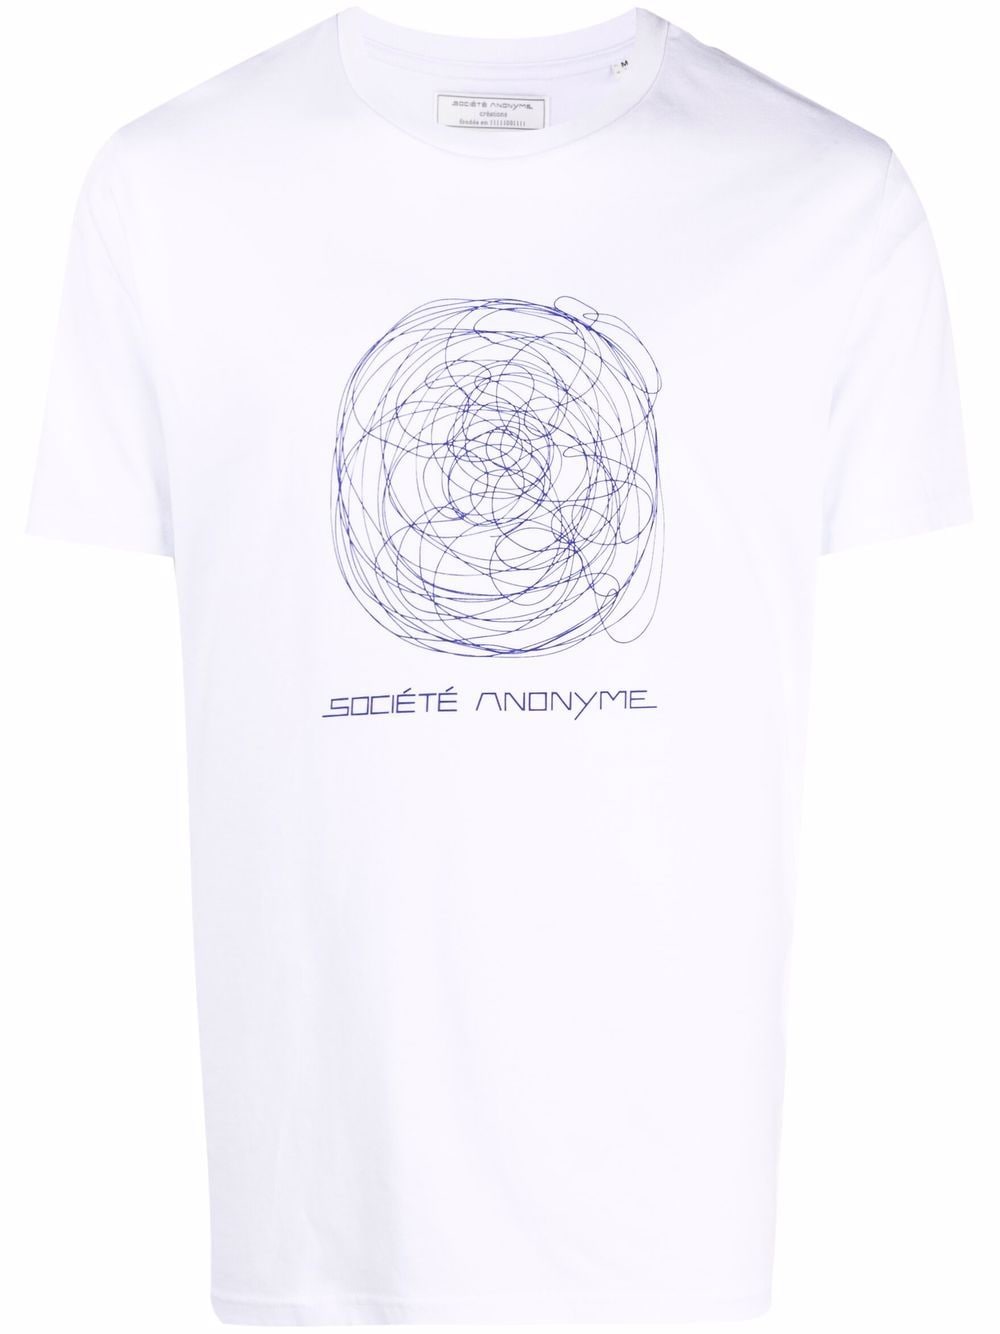 фото Société anonyme футболка с абстрактным принтом